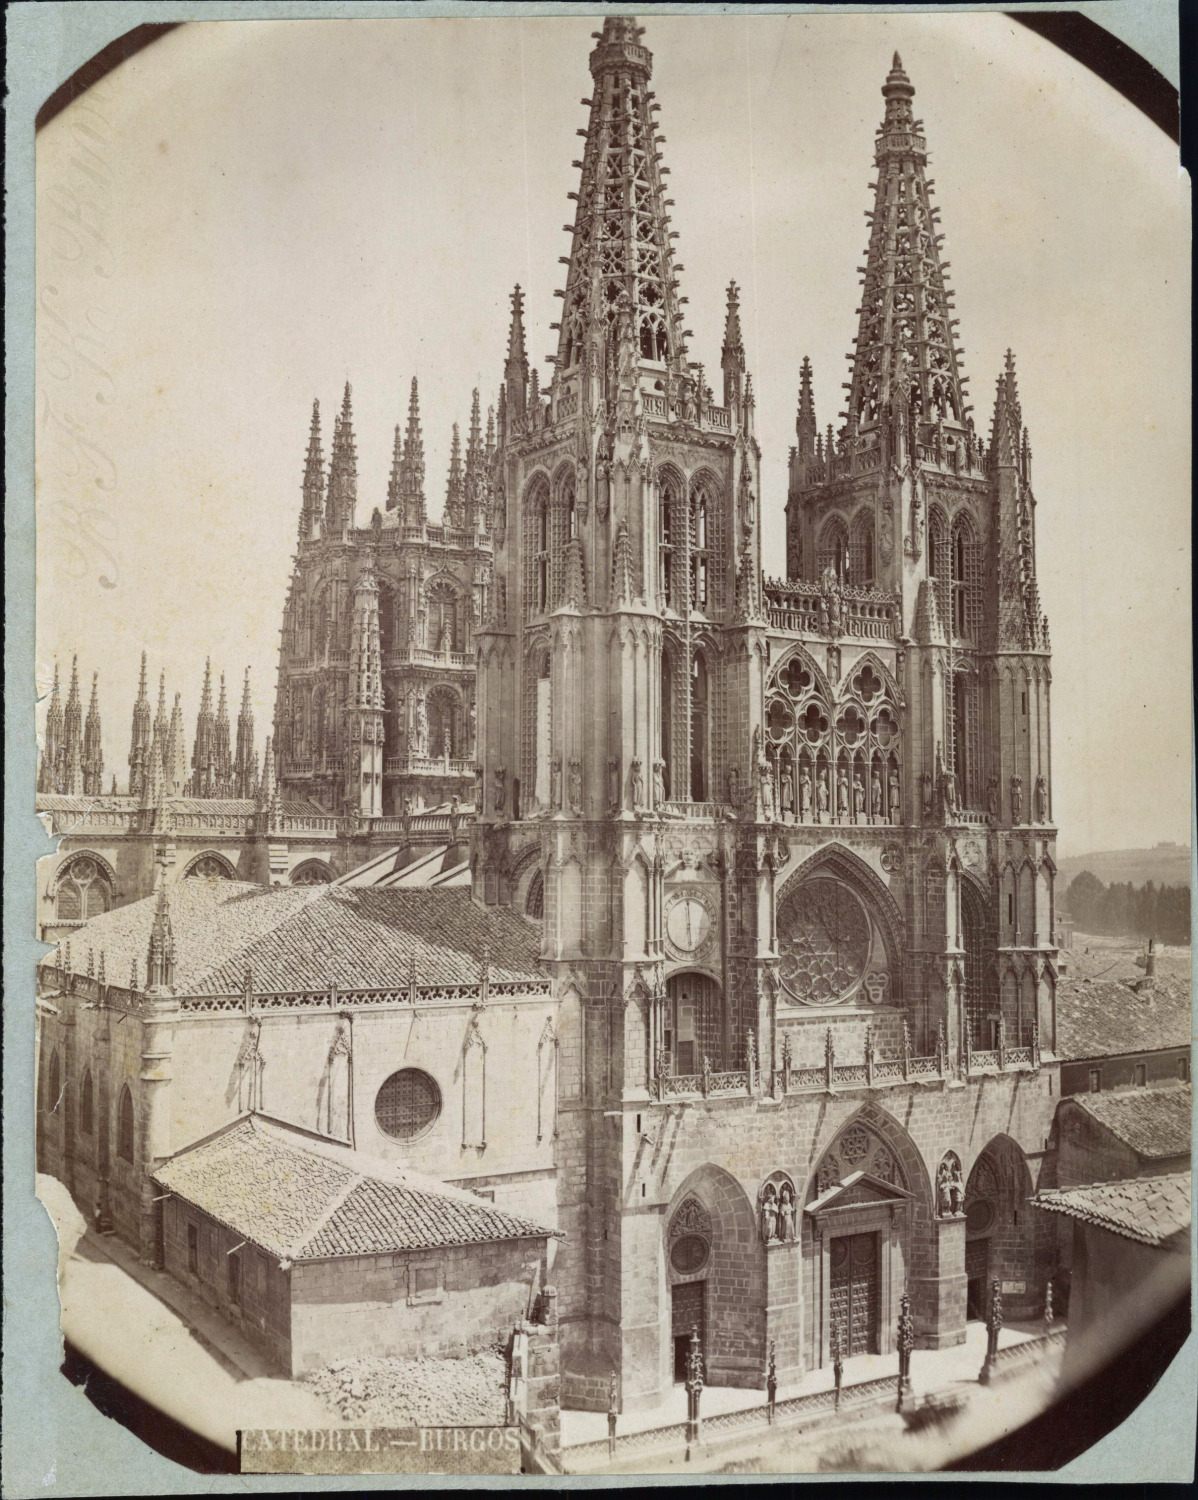 Spain, Burgos, Cathedral of Santa María de Burgos Vintage Tirage print, shot